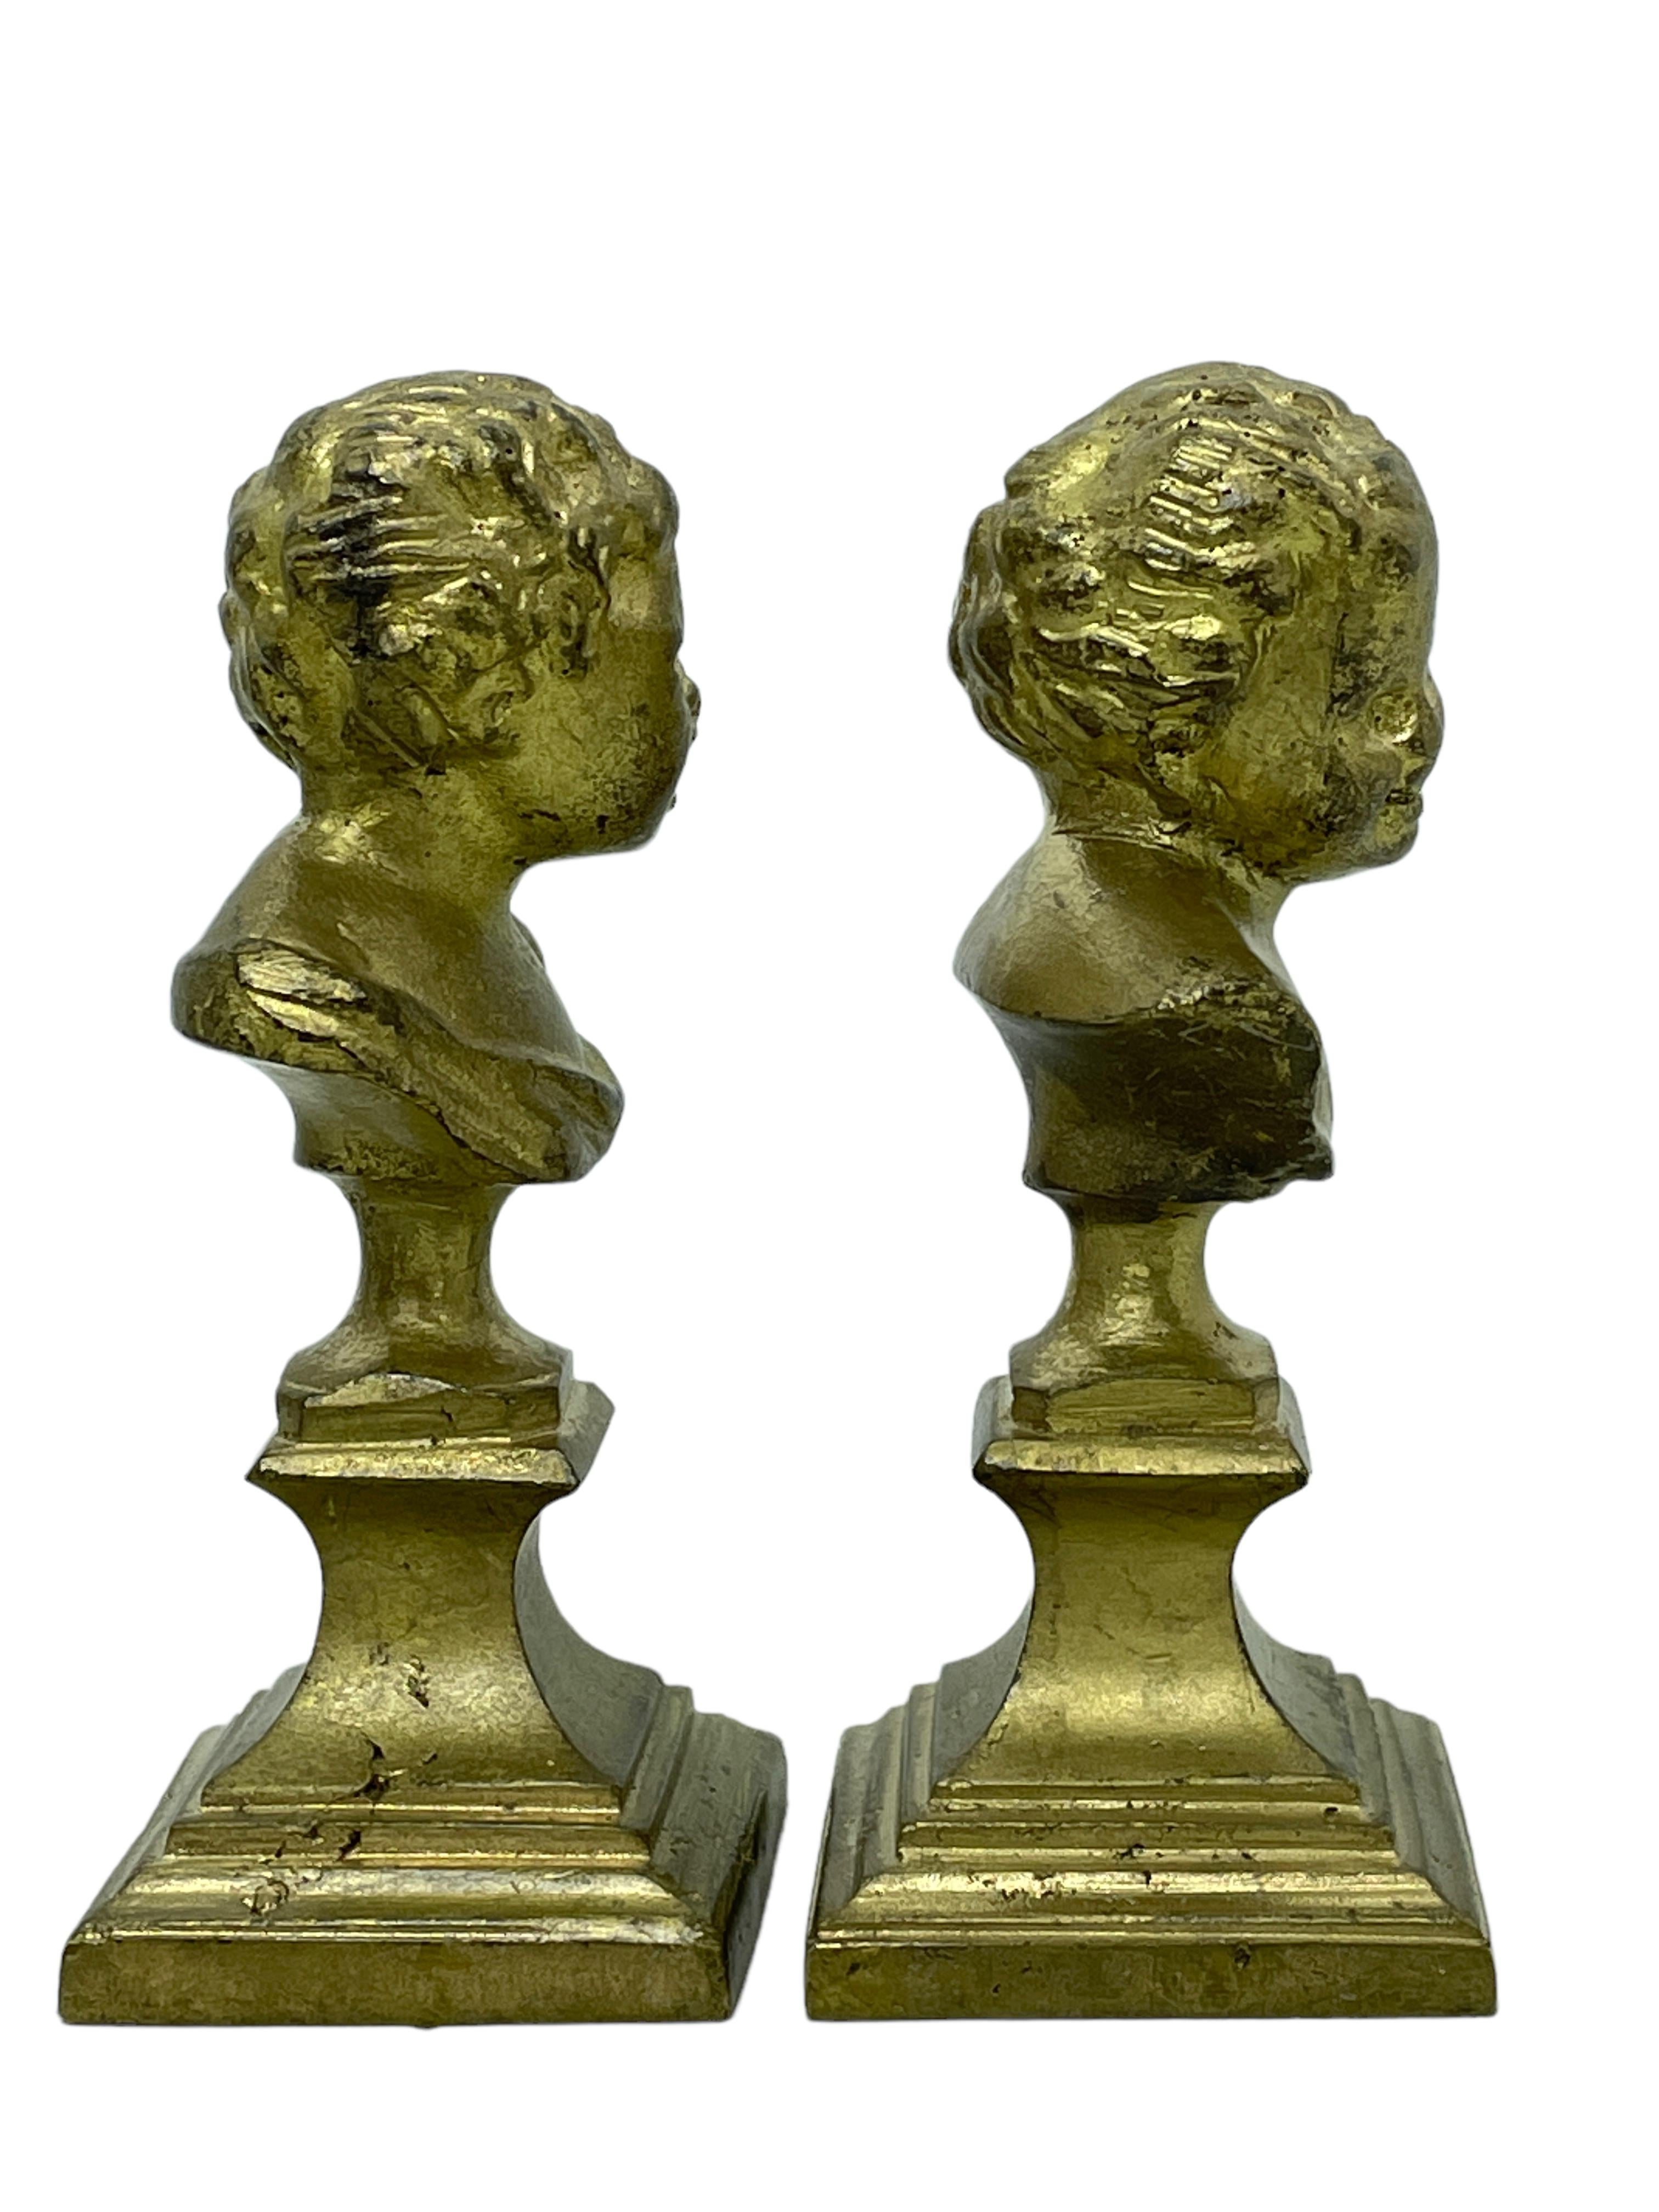 Belgian Pair Cherub Decorative Bronze Metal Head Bust Statues Sculptures, Belgium, 1900s For Sale